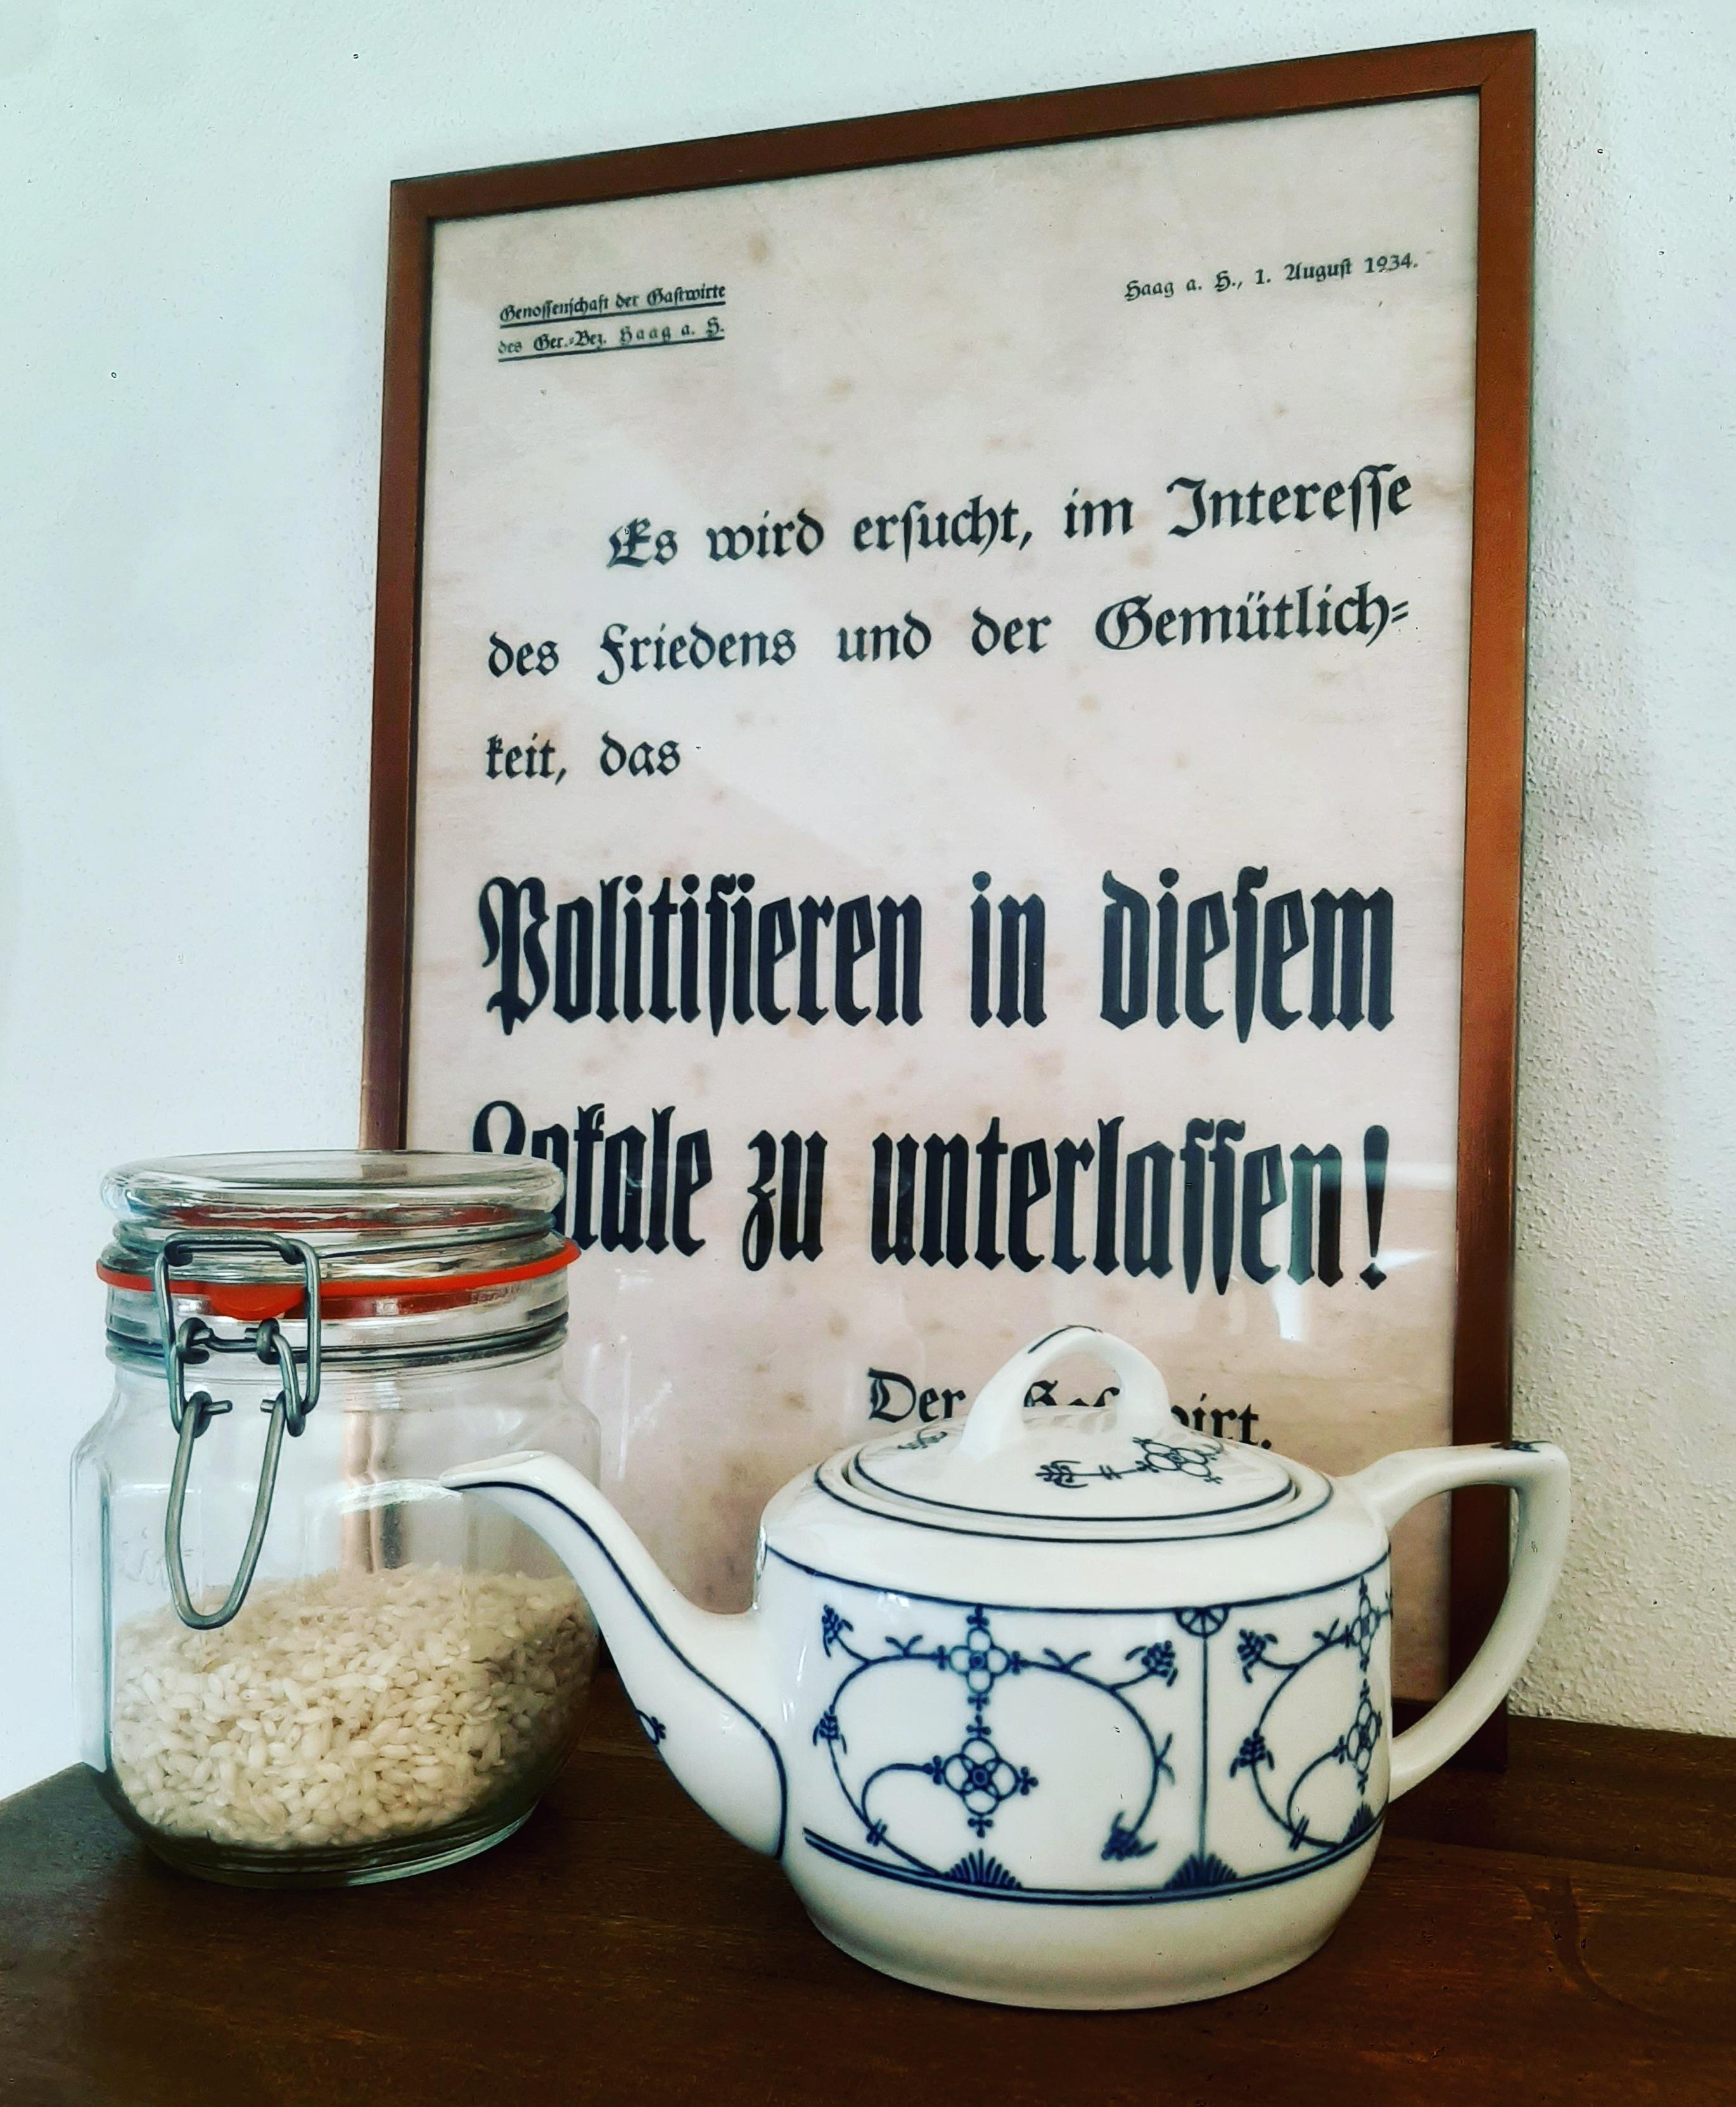 Küchendeko = Küchenregeln. #politisierenunterlassen #küchendeko #vintageposter #vintageporcelain